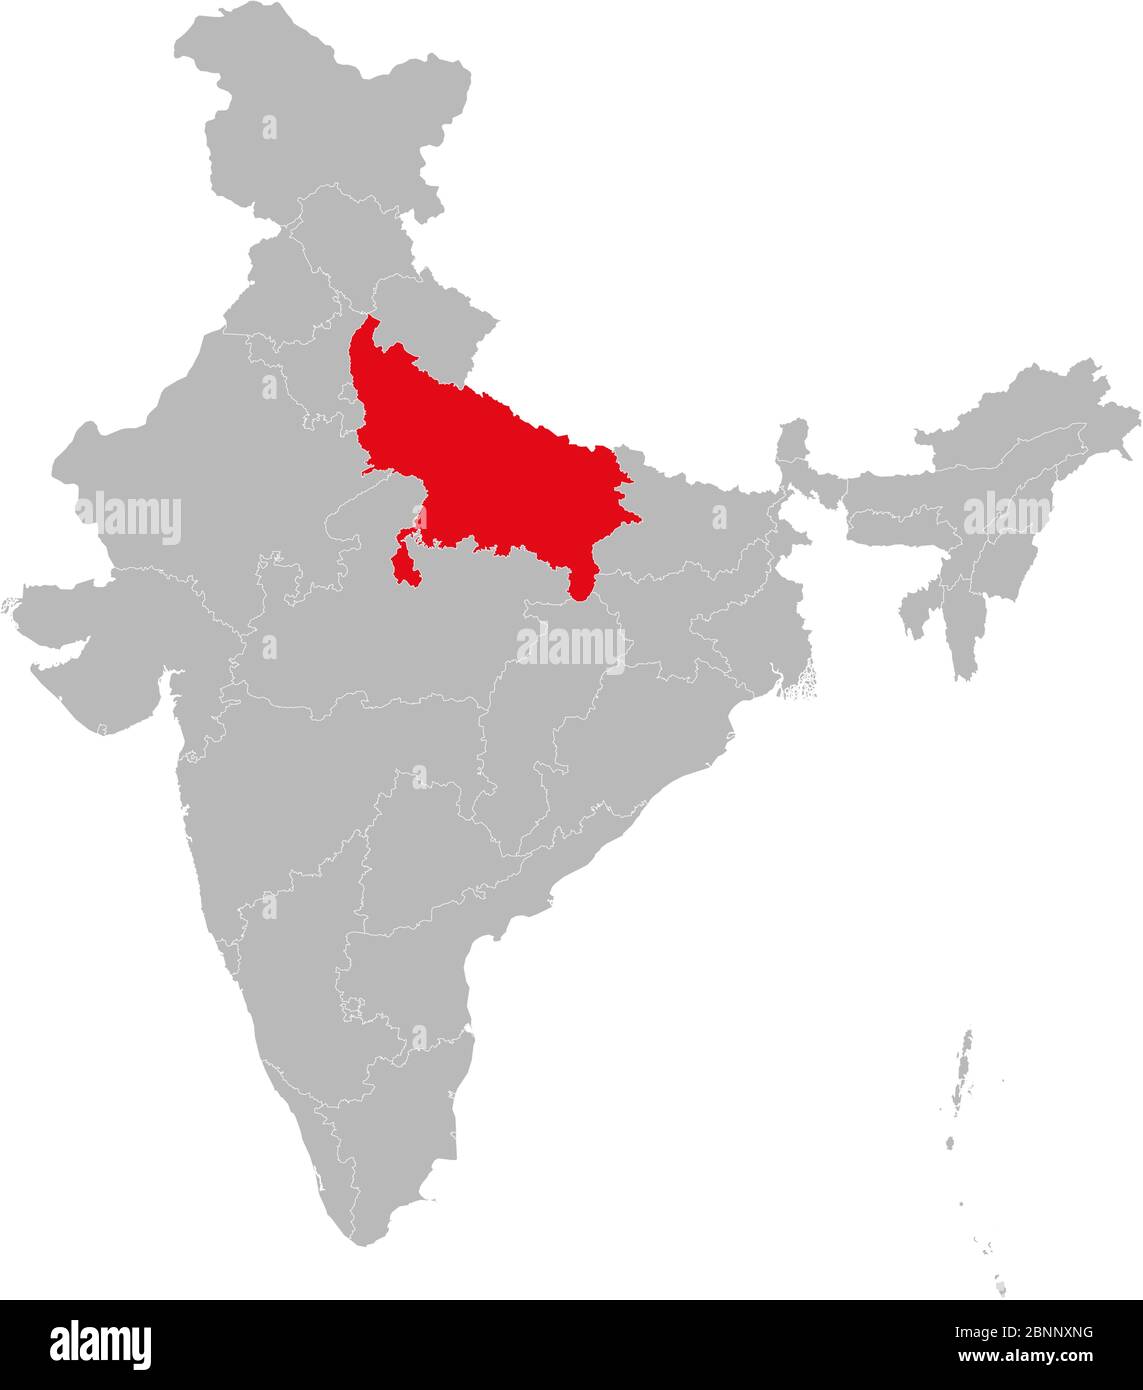 L'état de l'Uttar pradesh est marqué en rouge sur le vecteur de carte indien. Fond gris clair. Idéal pour les concepts d'affaires, toile de fond, arrière-plans, étiquette, autocollant, char Illustration de Vecteur